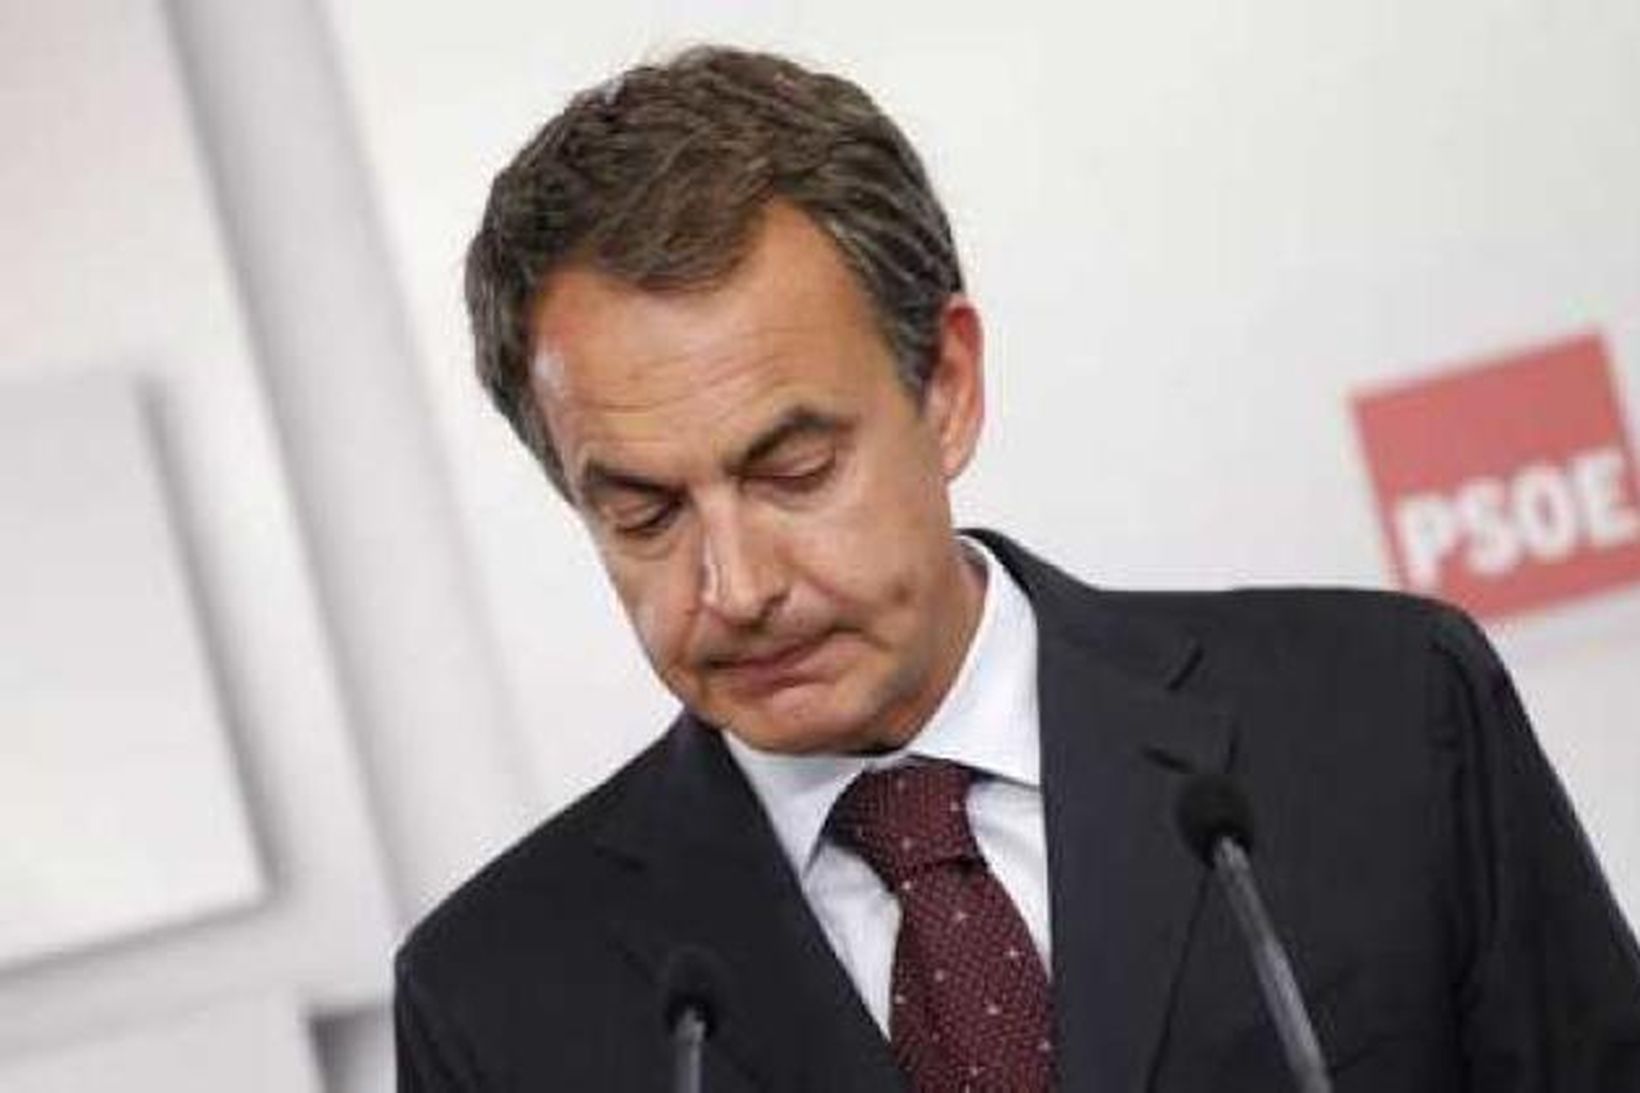 José Luis Rodríguez Zapatero, forsætisráðherra Frakklands, kemur á blaðamannafund í …